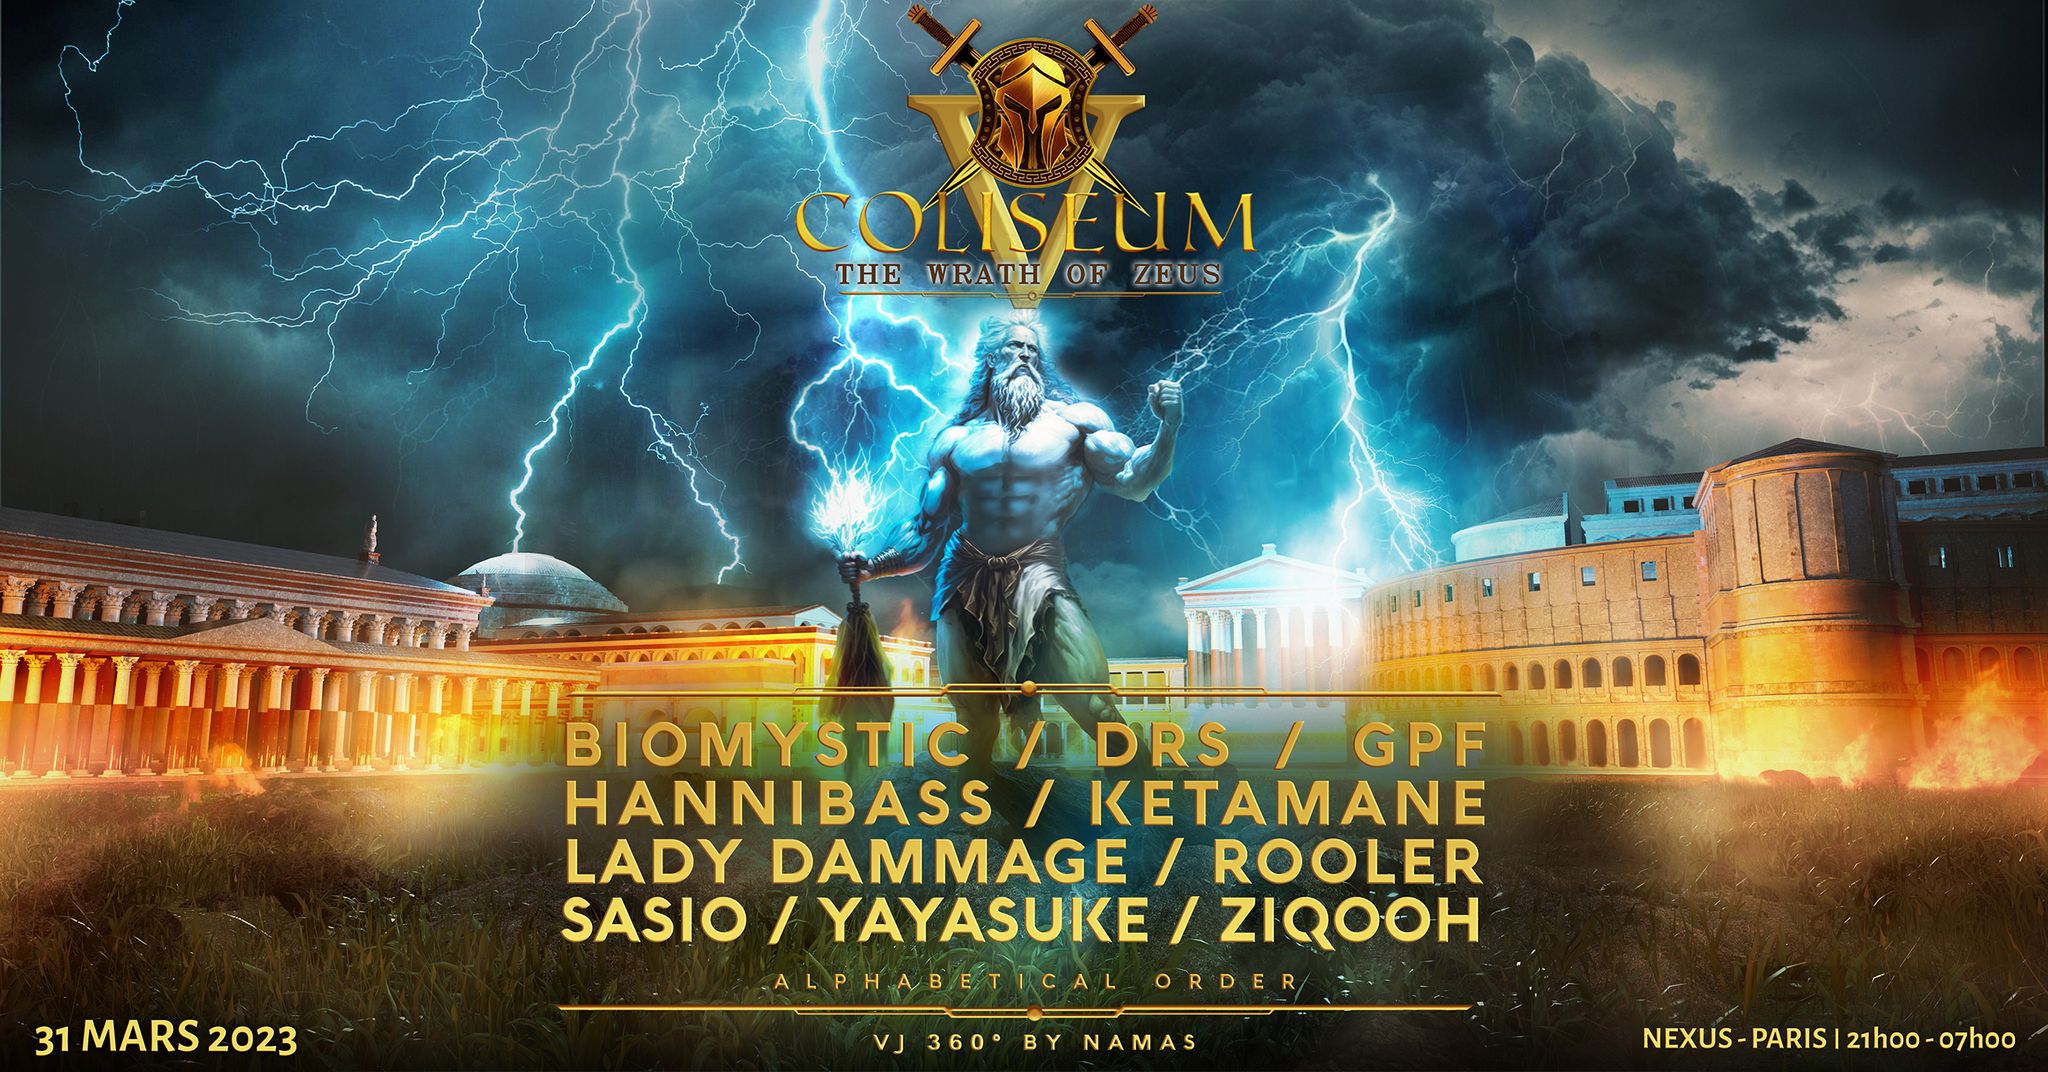 COLISEUM V - The Wrath Of Zeus